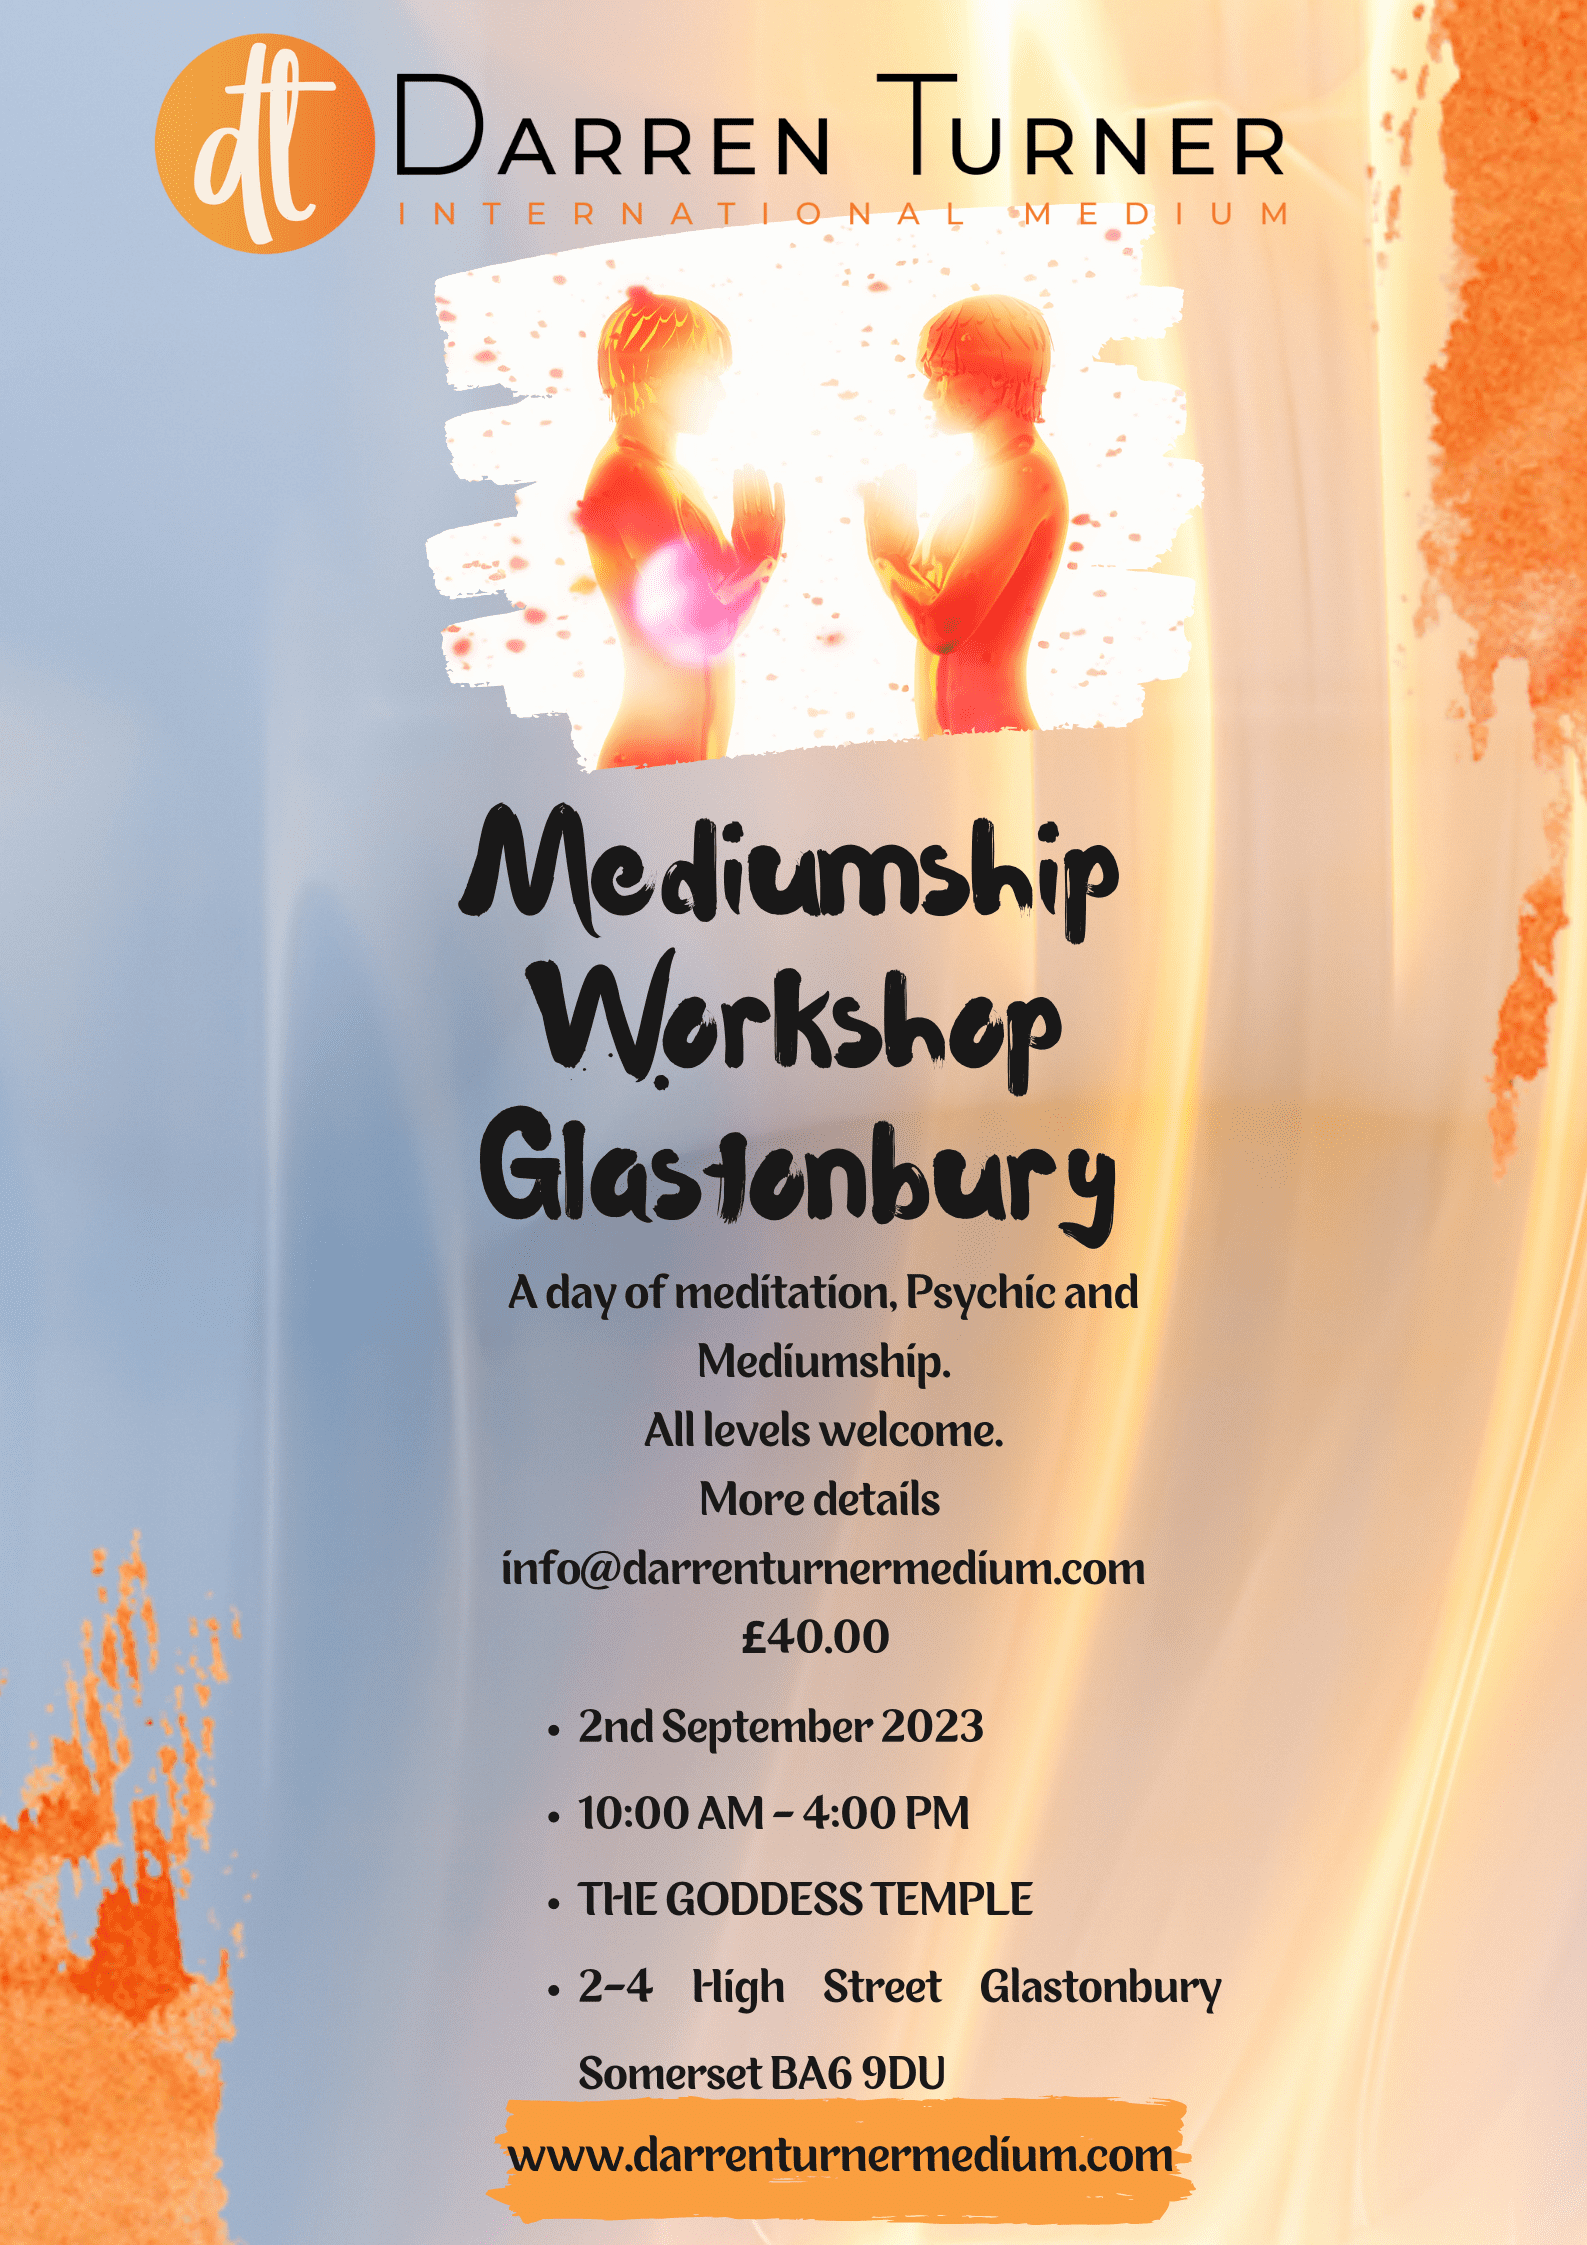 2nd September - Glastonbury The Goddess Temple